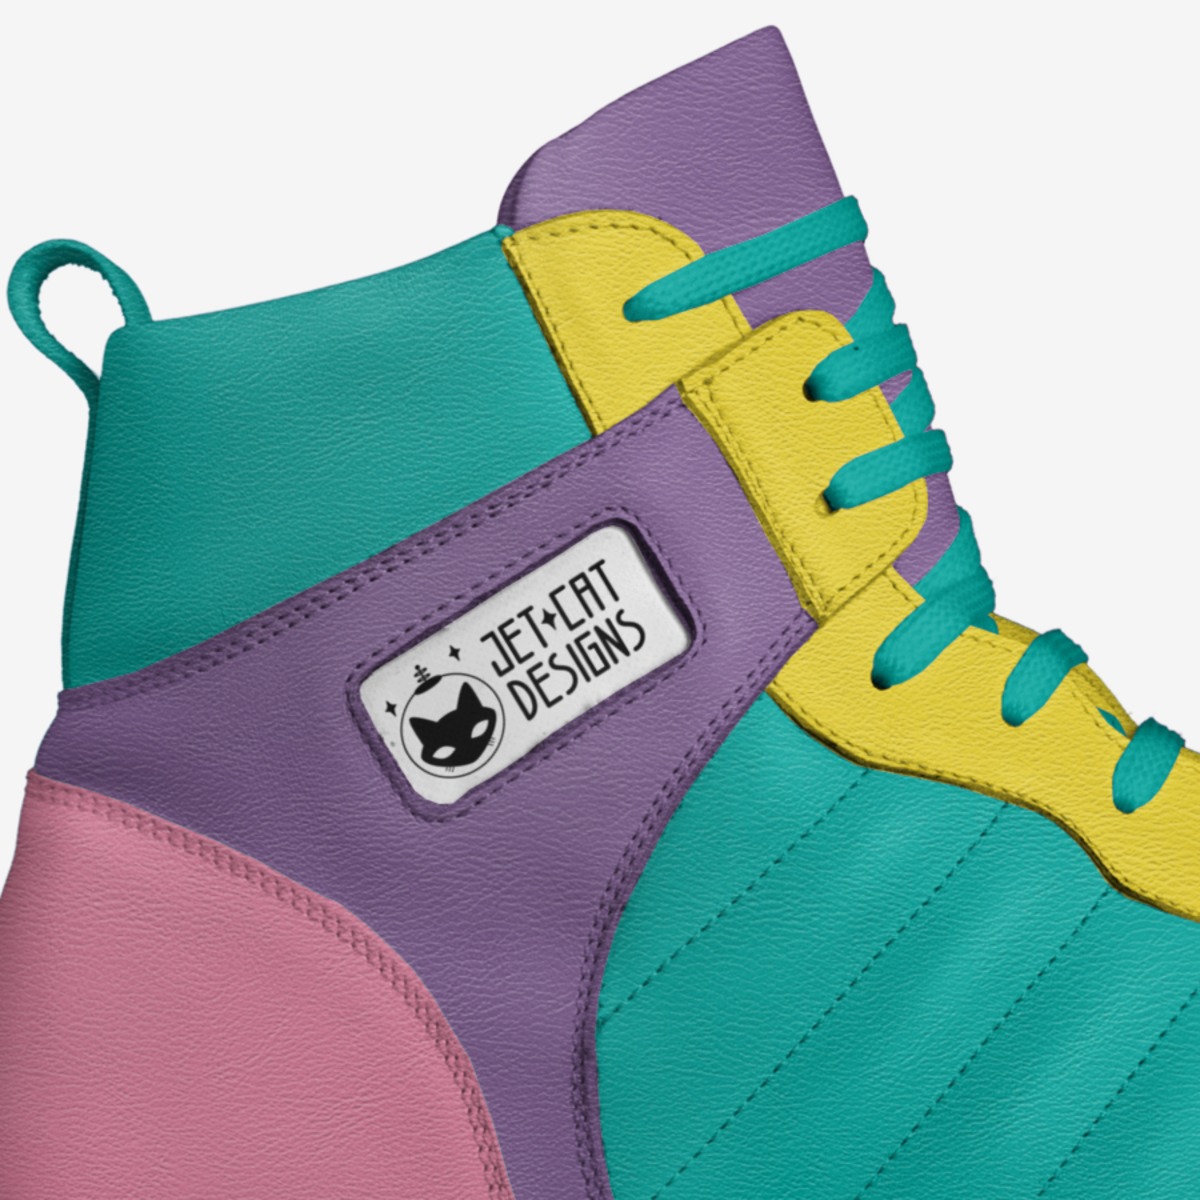 80's Vomit | A Custom Shoe concept by April Webber